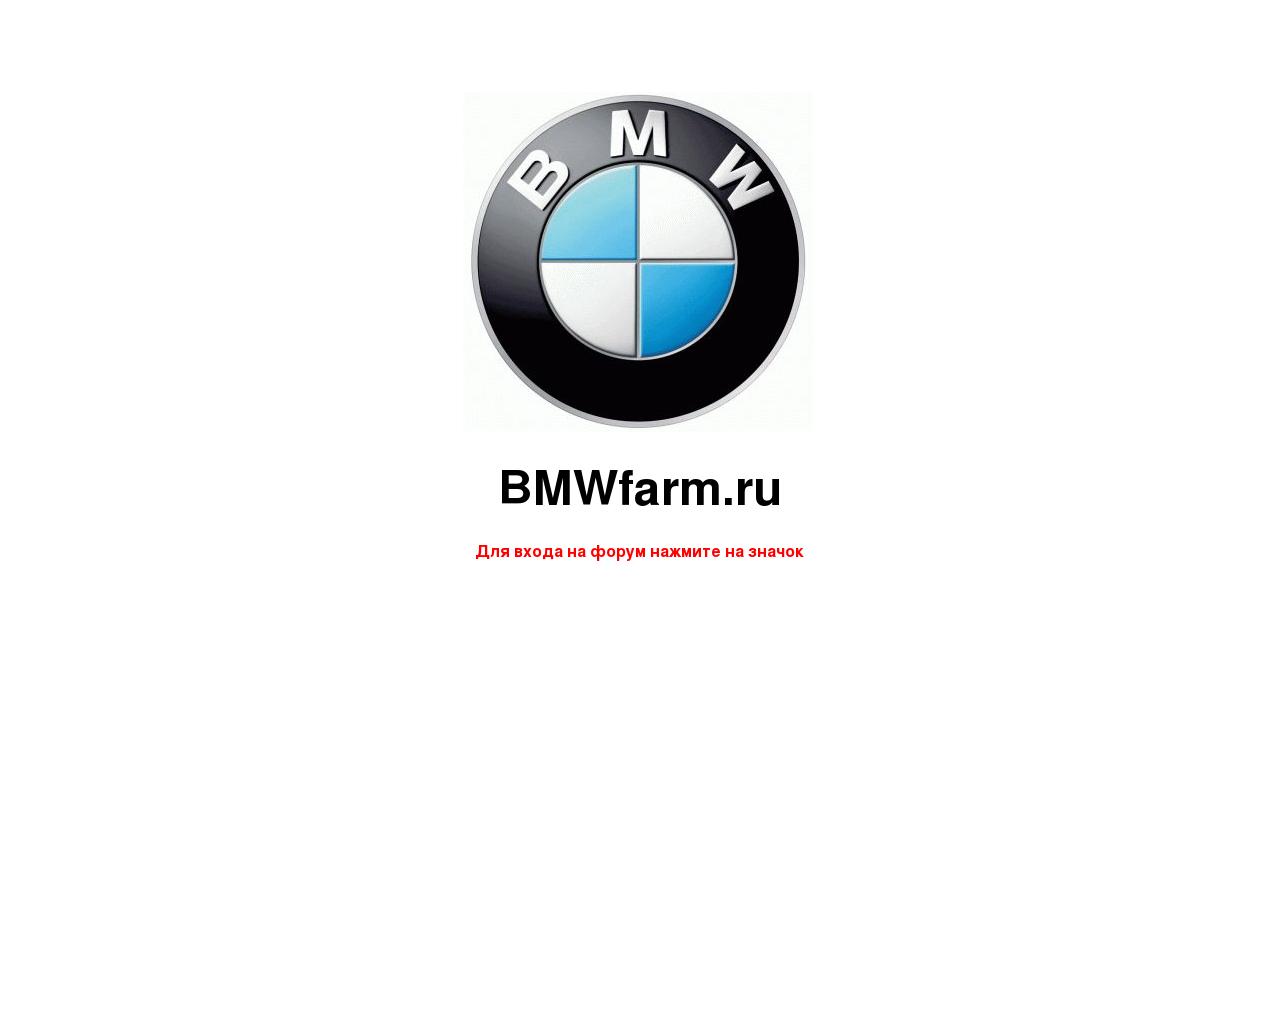 Изображение сайта bmwfarm.ru в разрешении 1280x1024